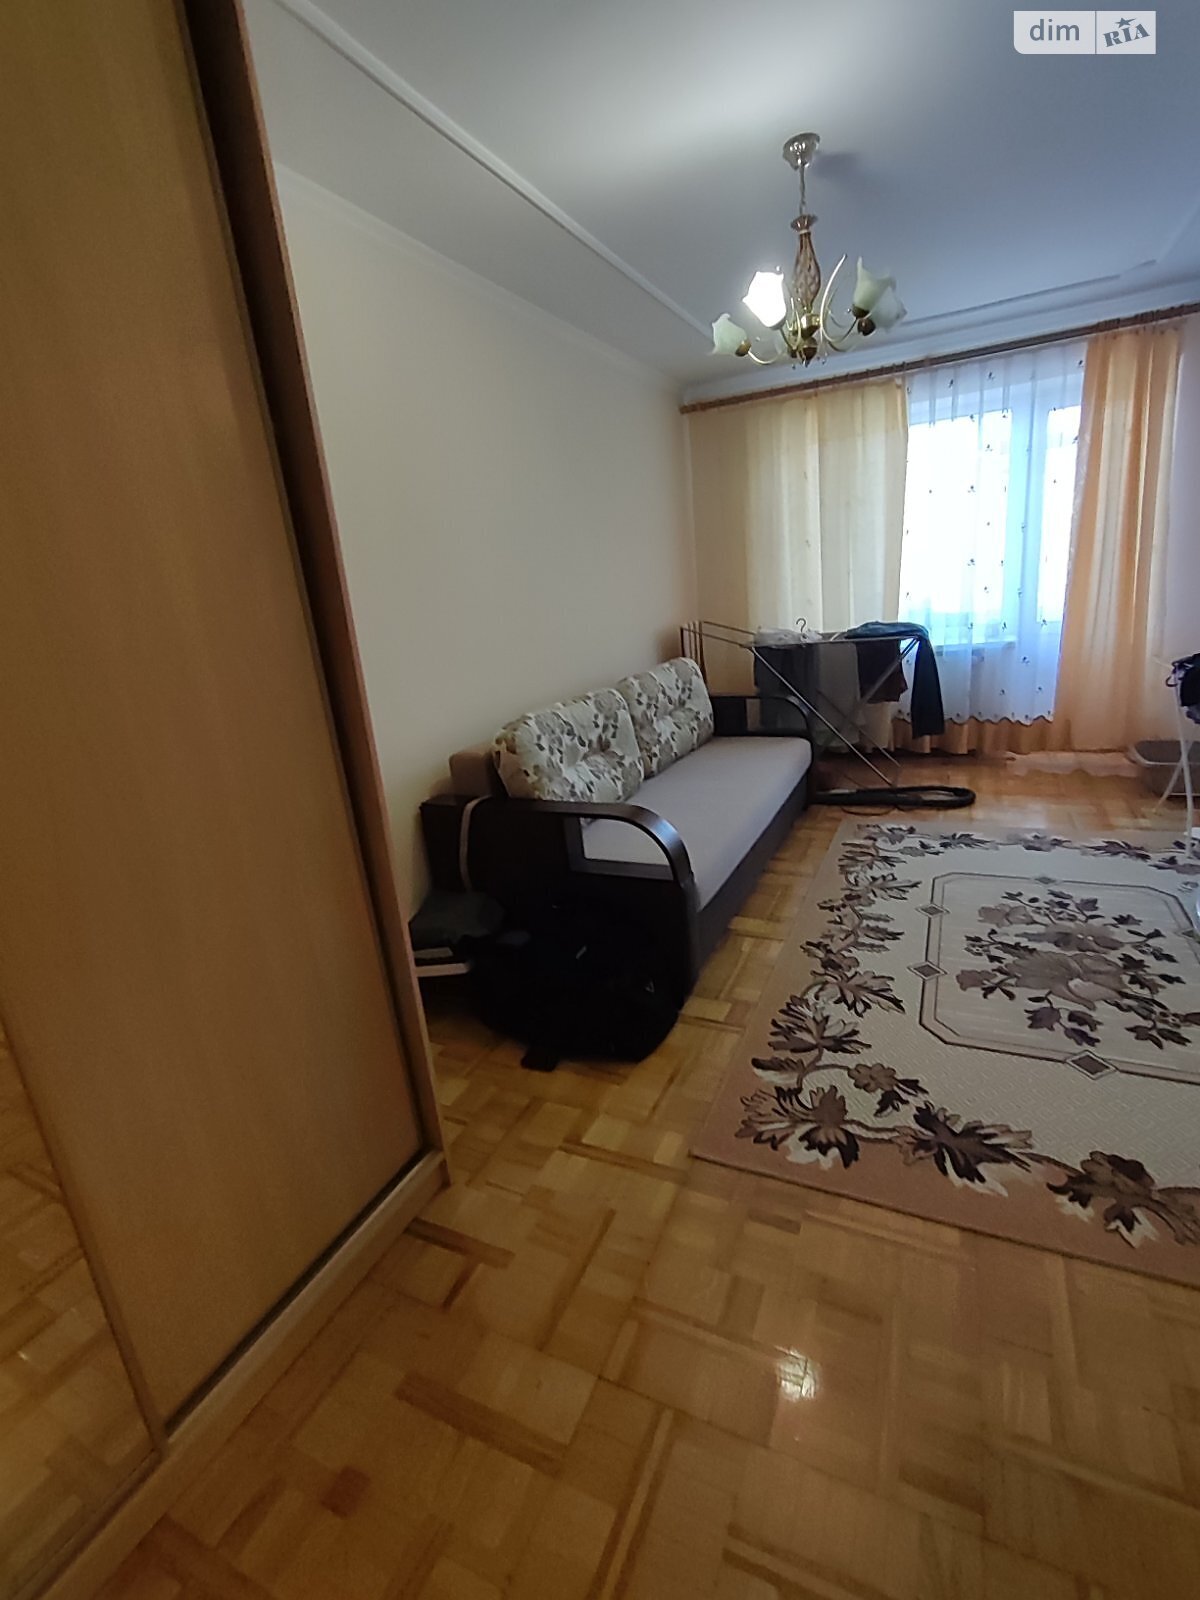 Продажа трехкомнатной квартиры в Ужгороде, на ул. Михаила Вербицкого 43, район Пьяный базар фото 1